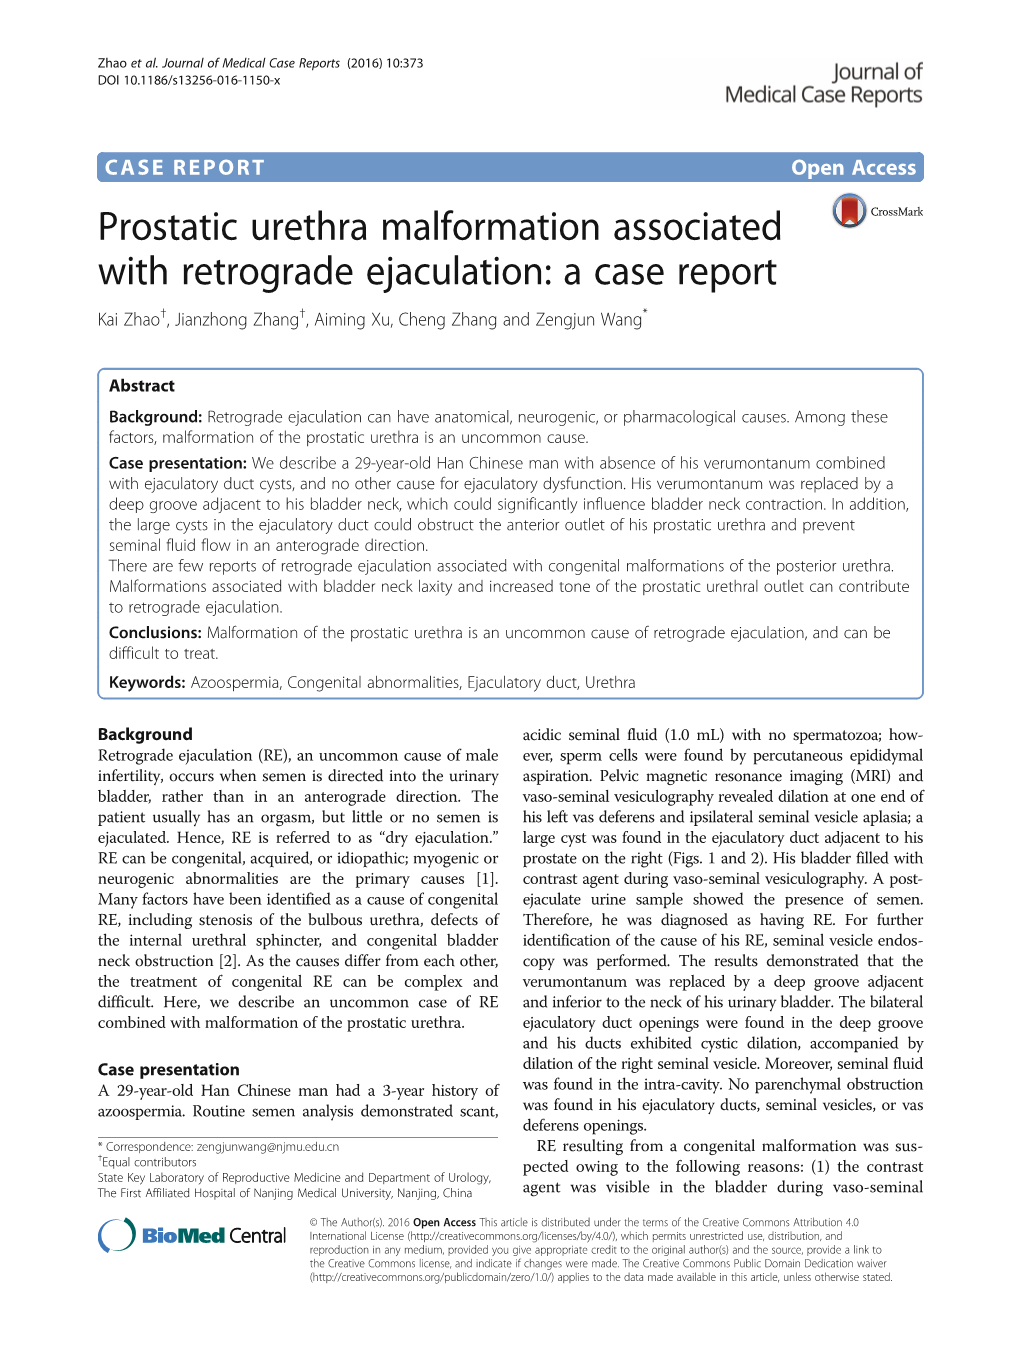 Prostatic Urethra Malformation Associated with Retrograde Ejaculation: a Case Report Kai Zhao†, Jianzhong Zhang†, Aiming Xu, Cheng Zhang and Zengjun Wang*